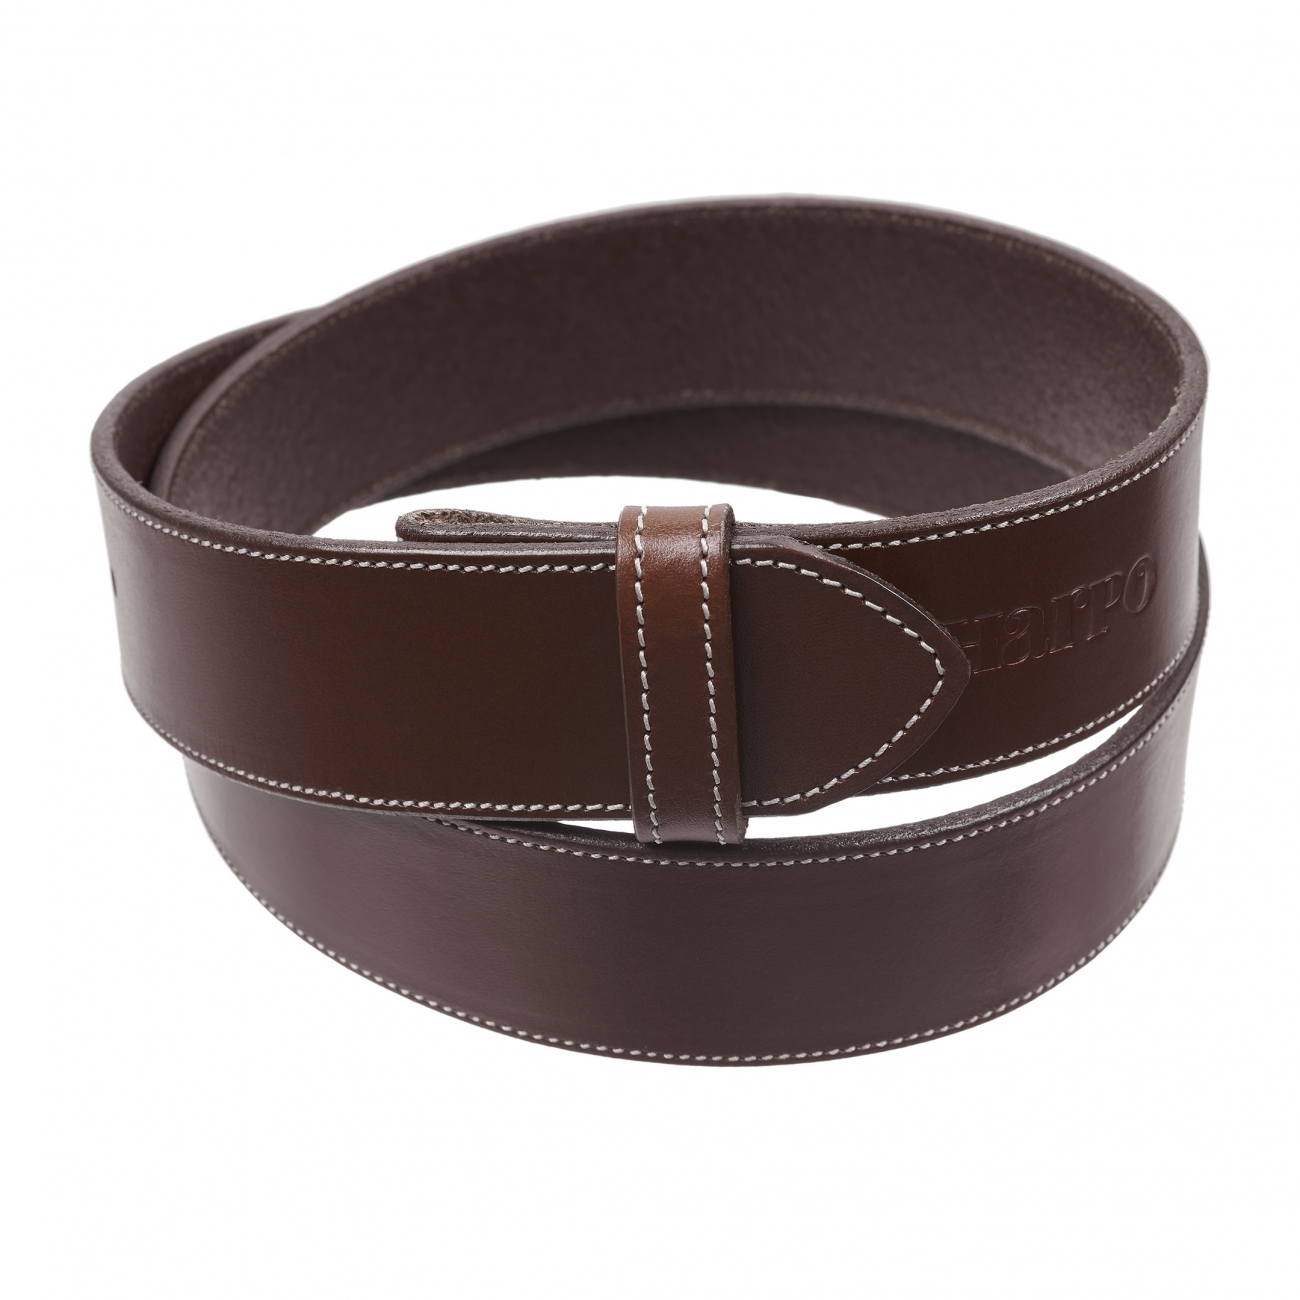 Brown leather belt CU01